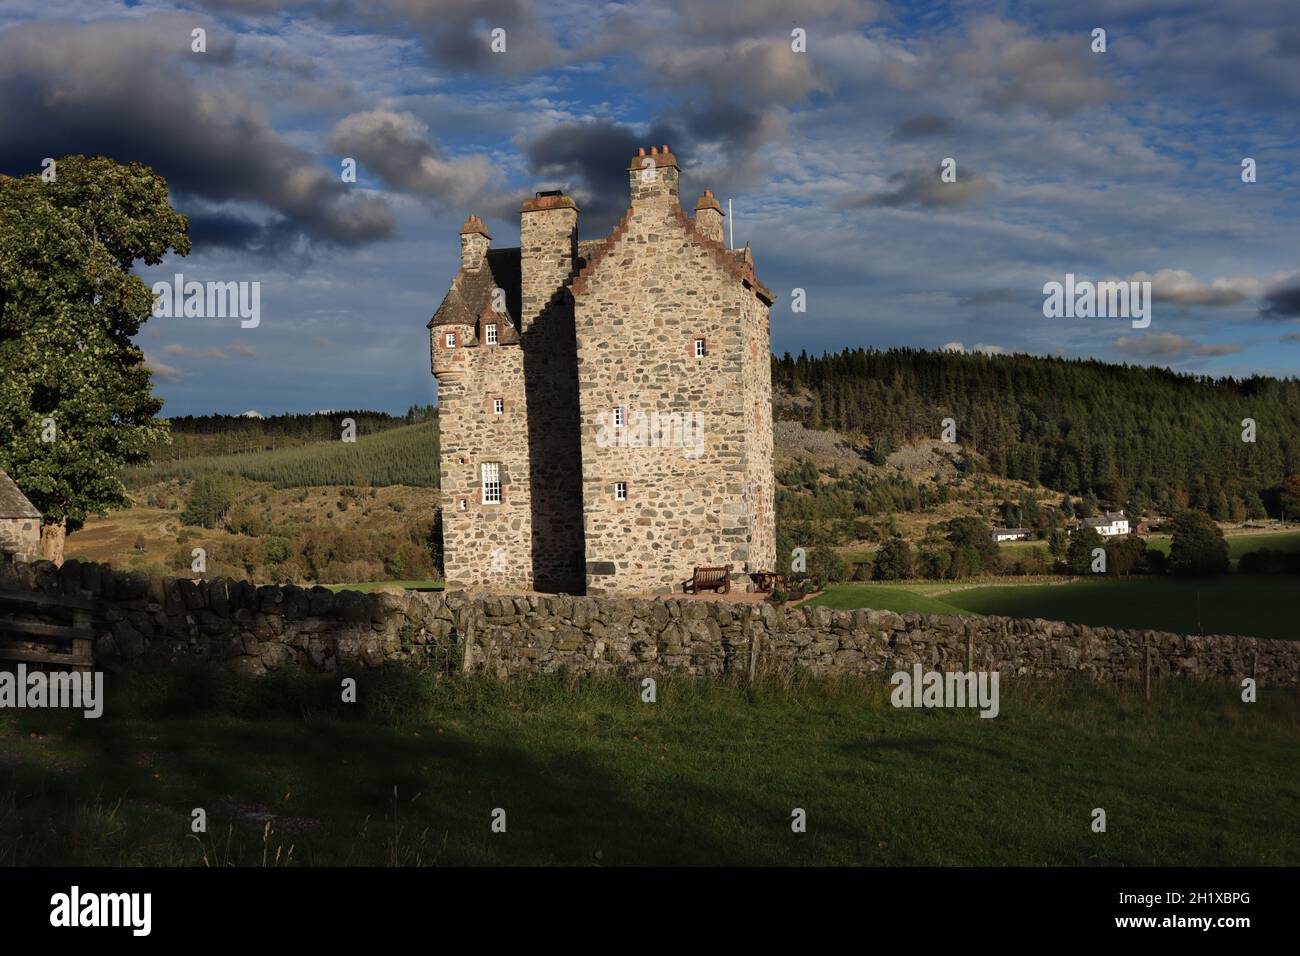 Le château de Forter, construit en 1560 à Perthshire, en Écosse. Banque D'Images